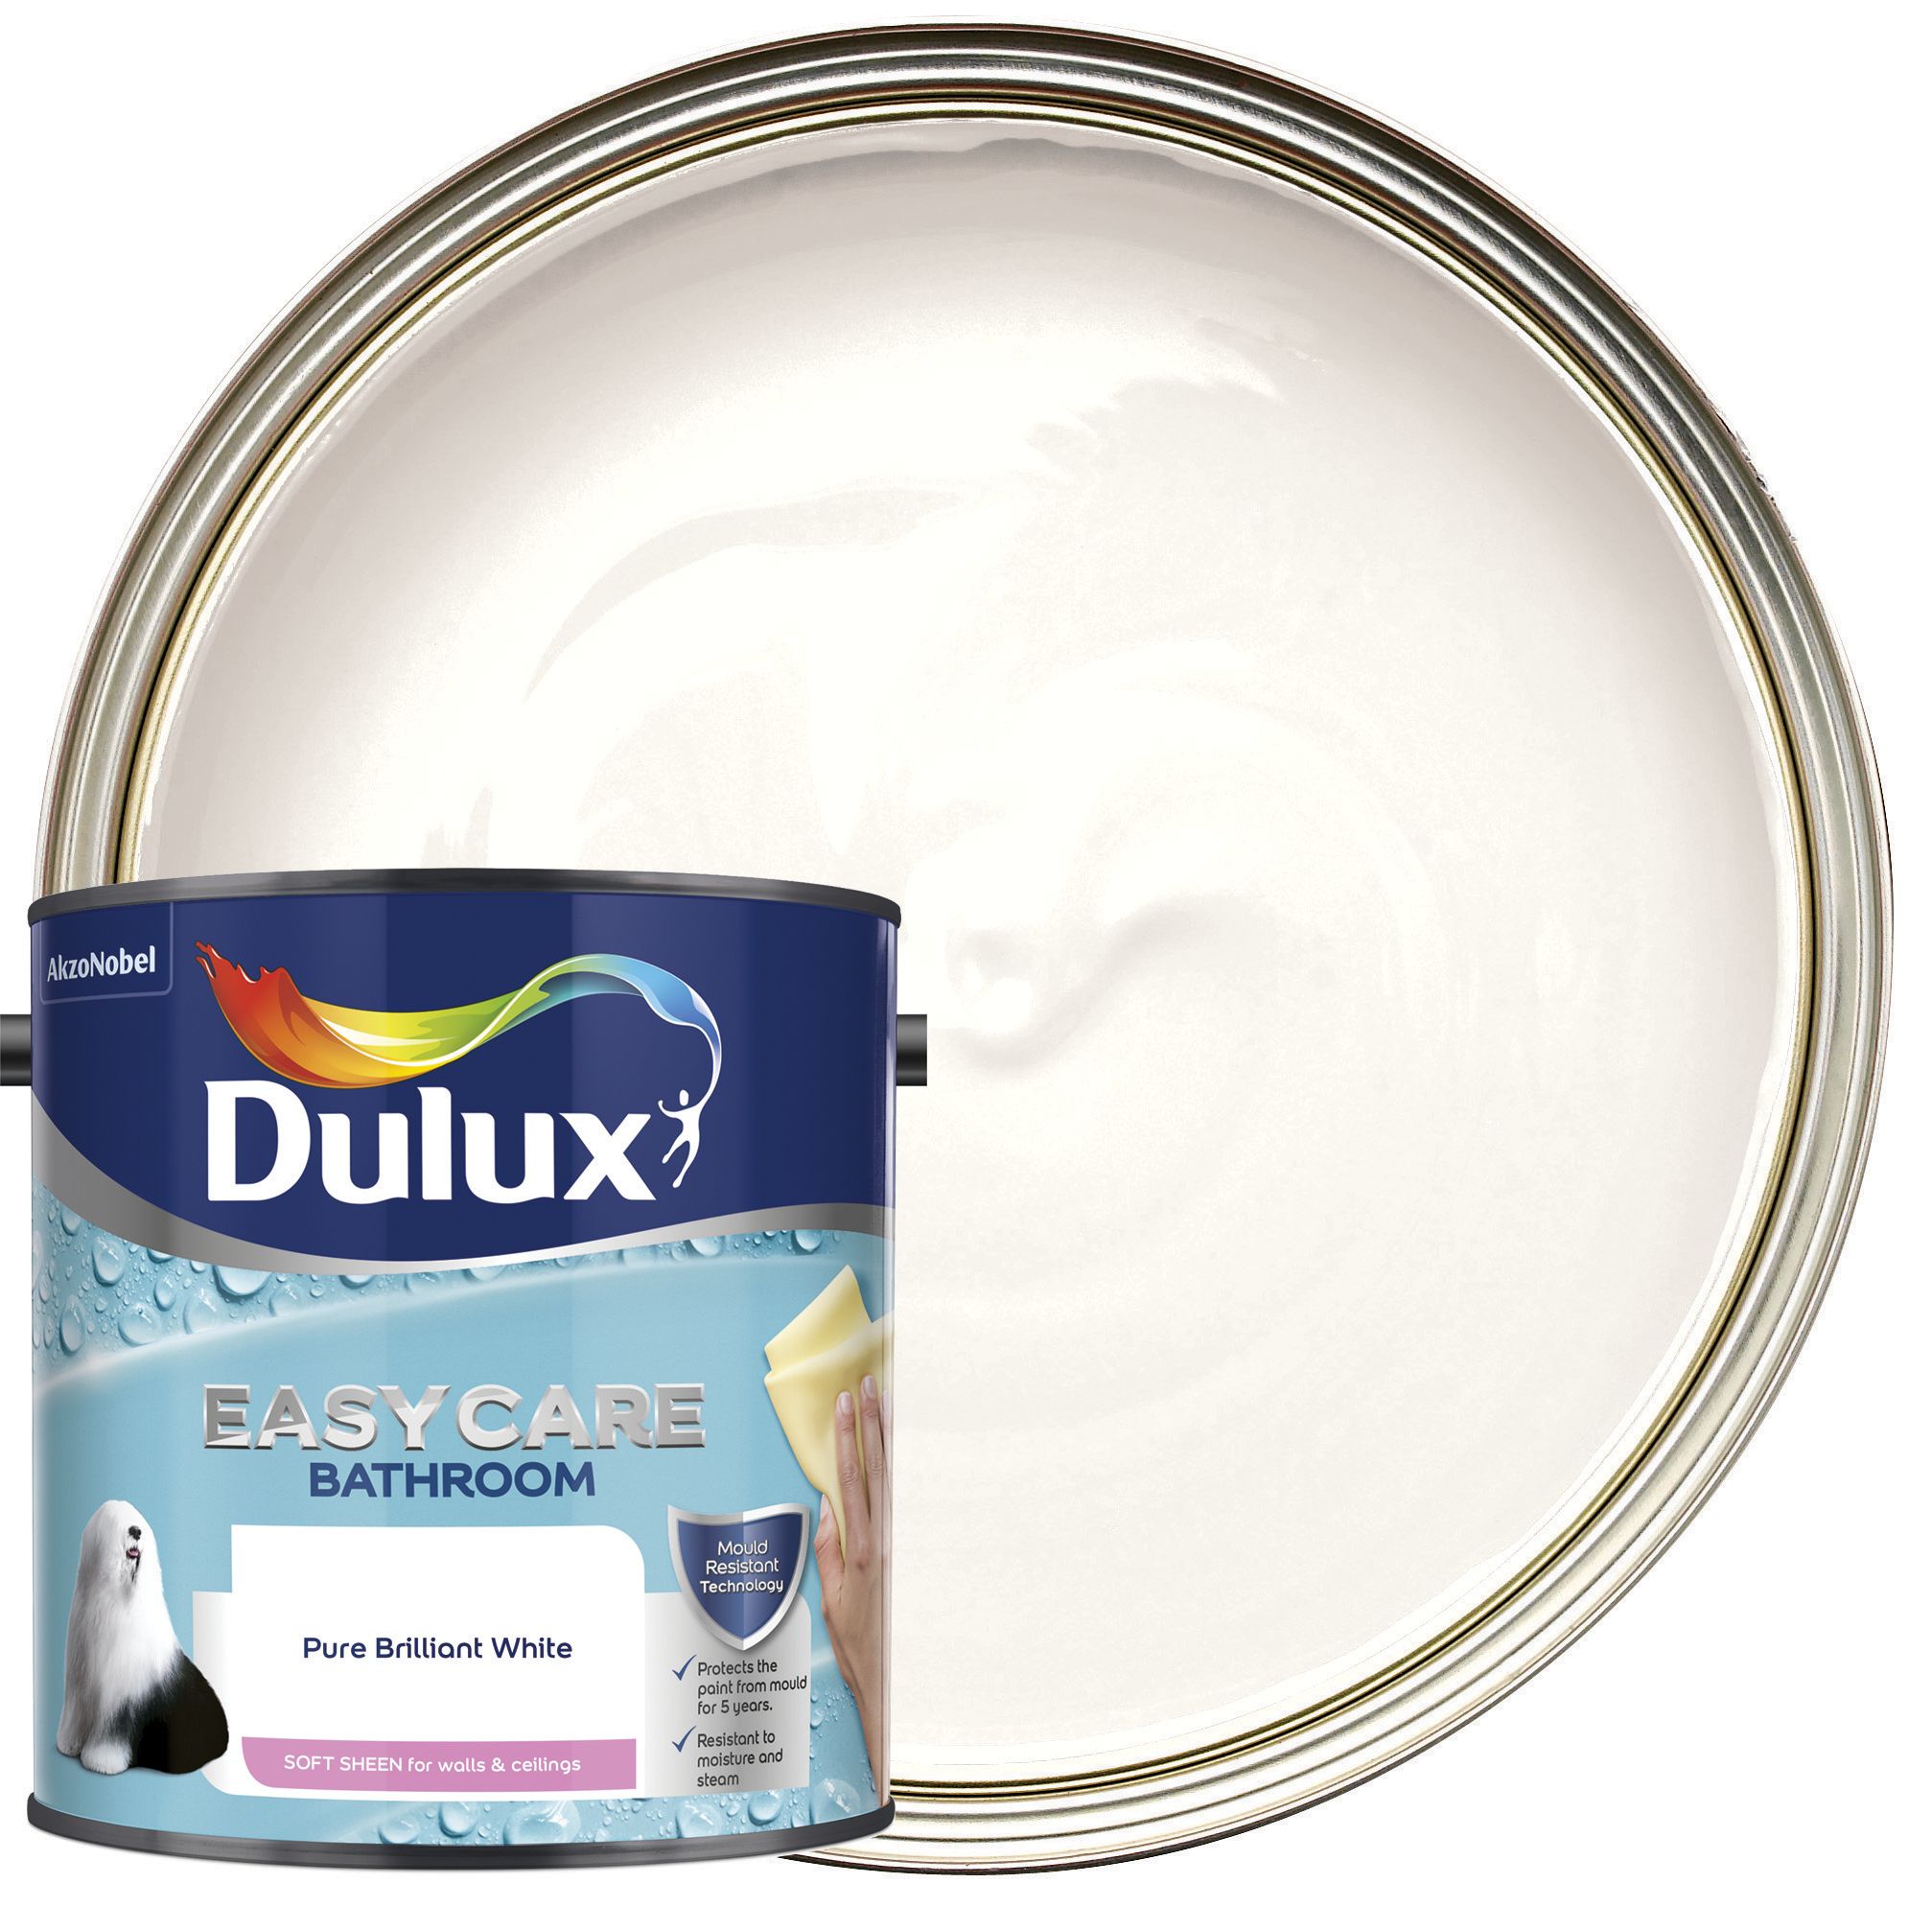 Dulux Easycare Bathroom Soft Sheen Emulsion Paint - Pure Brilliant White - 2.5L